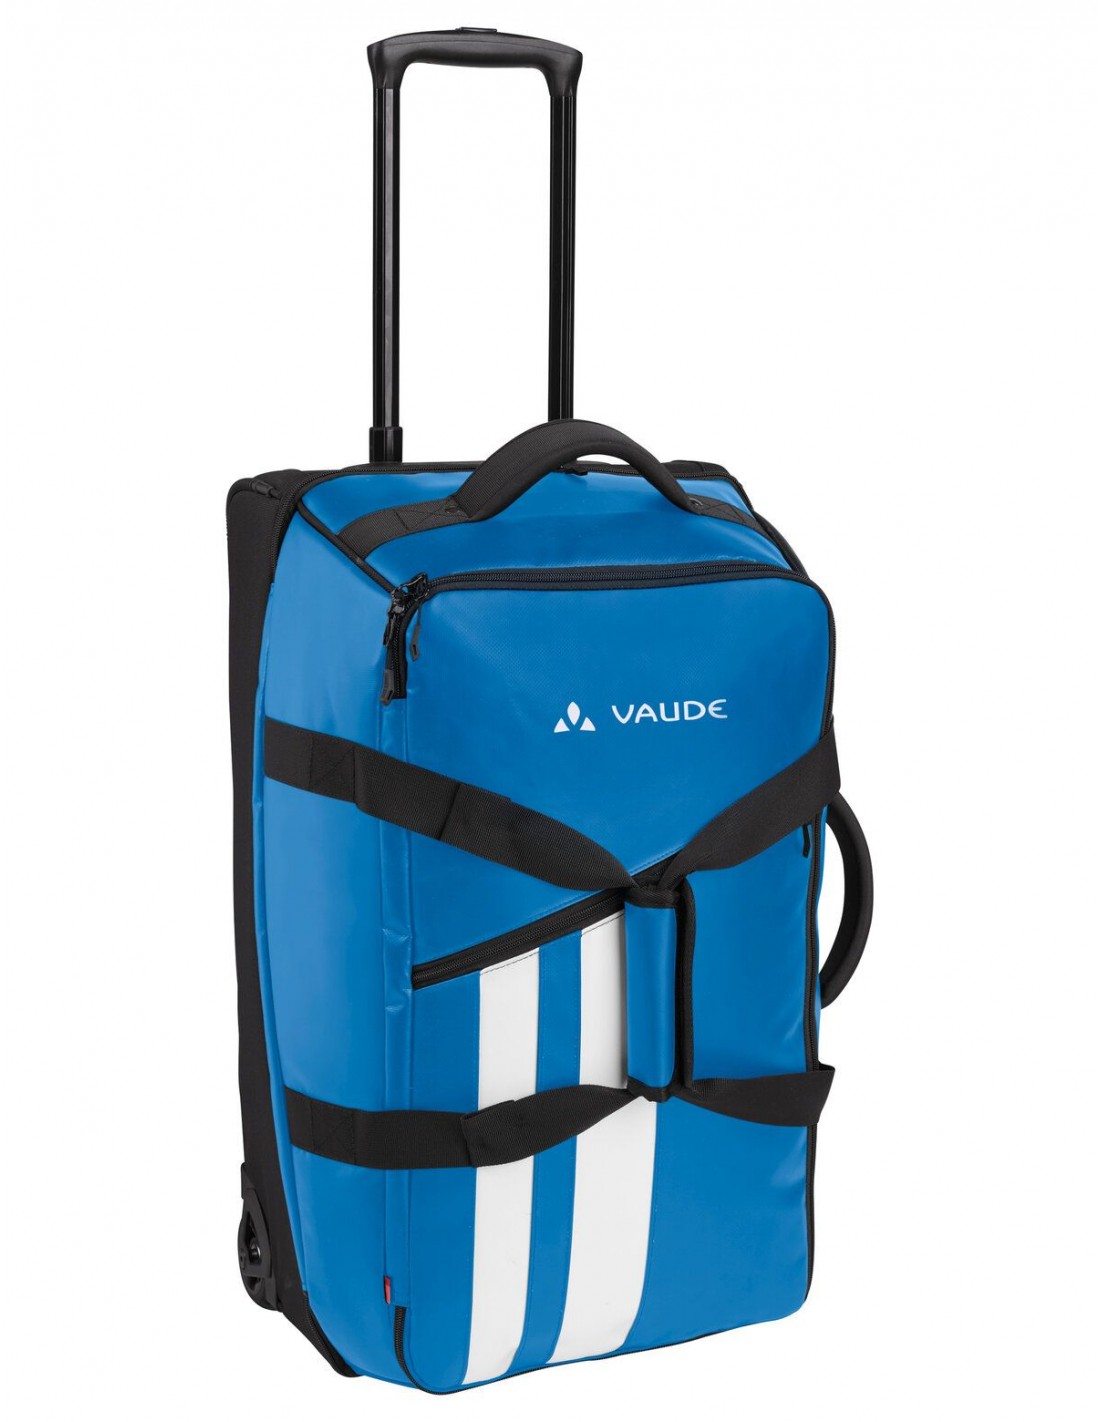 Vaude Reisetasche Rotuma 65 Liter, Trolley, azure (blau), Tragegriff, mit Rollen, PVC-frei, für Reisende und Wanderer von Vaude